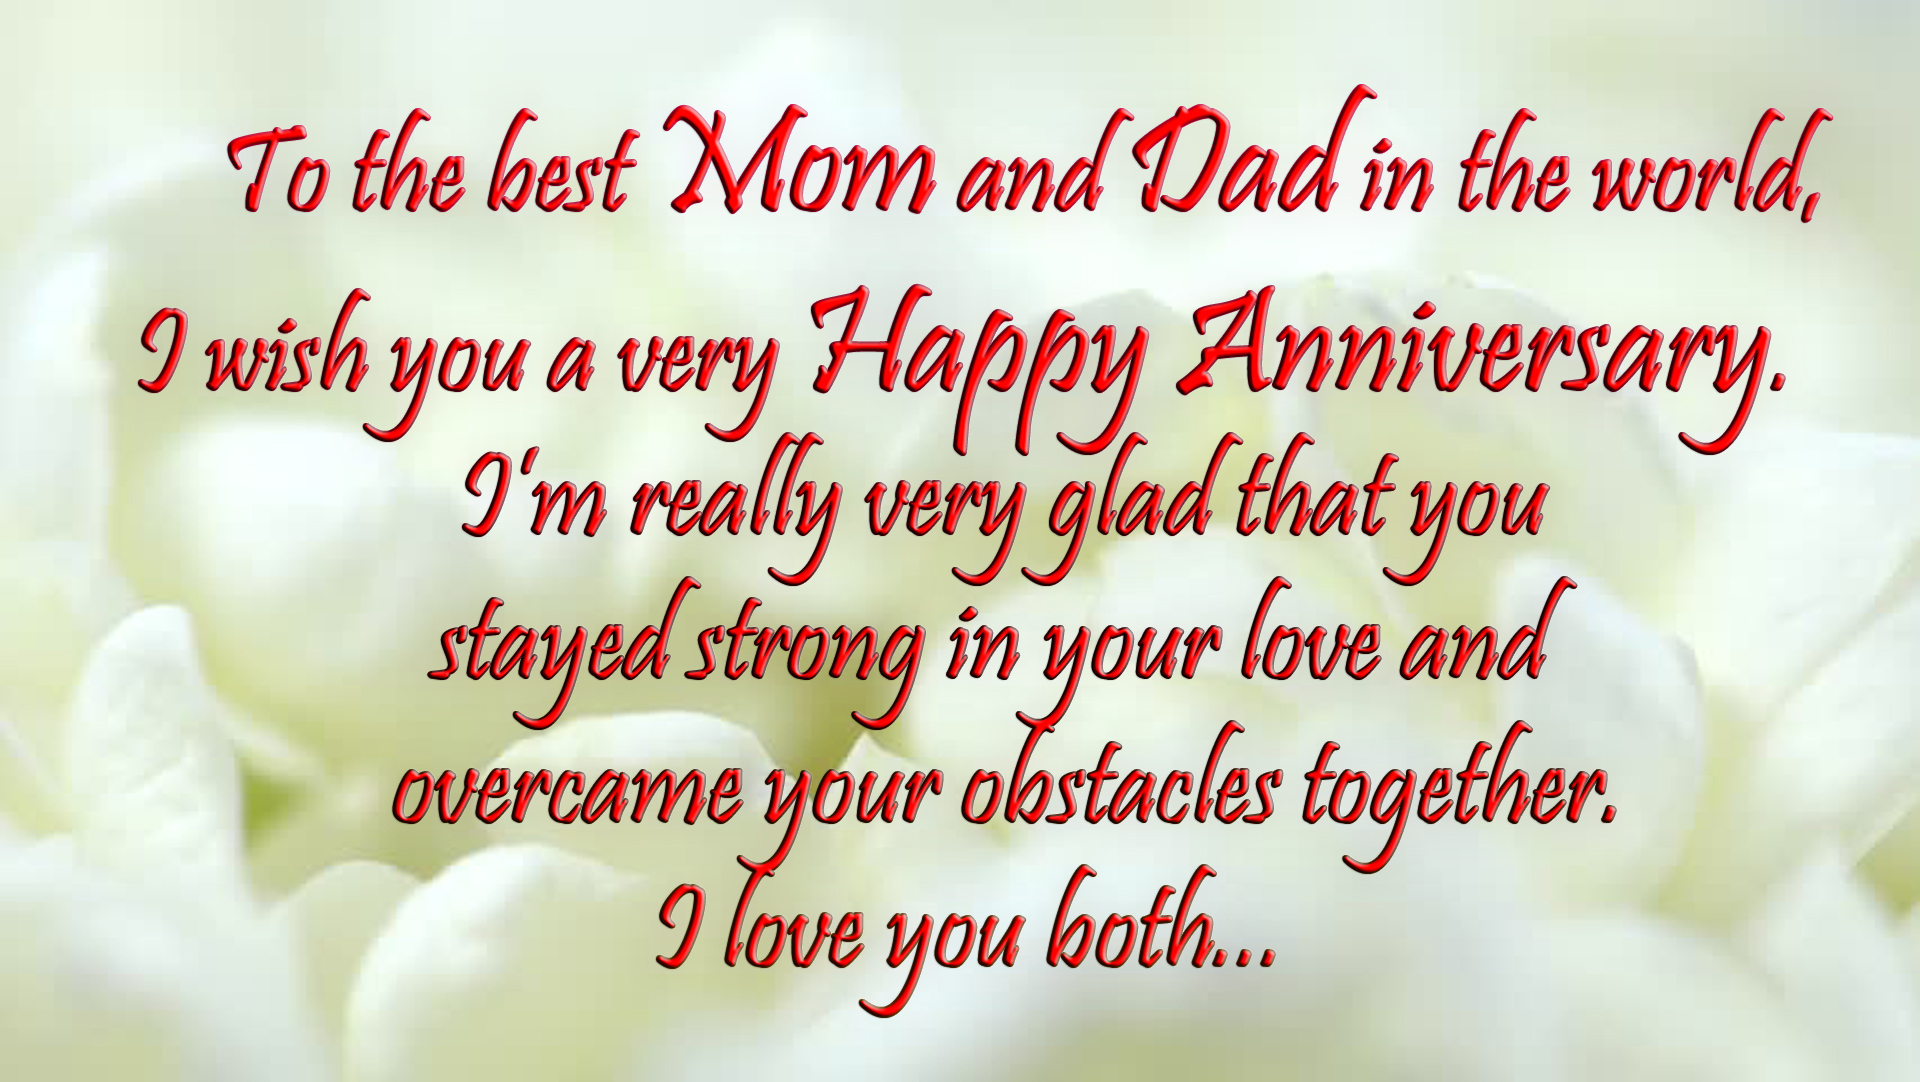 speech on mom dad anniversary